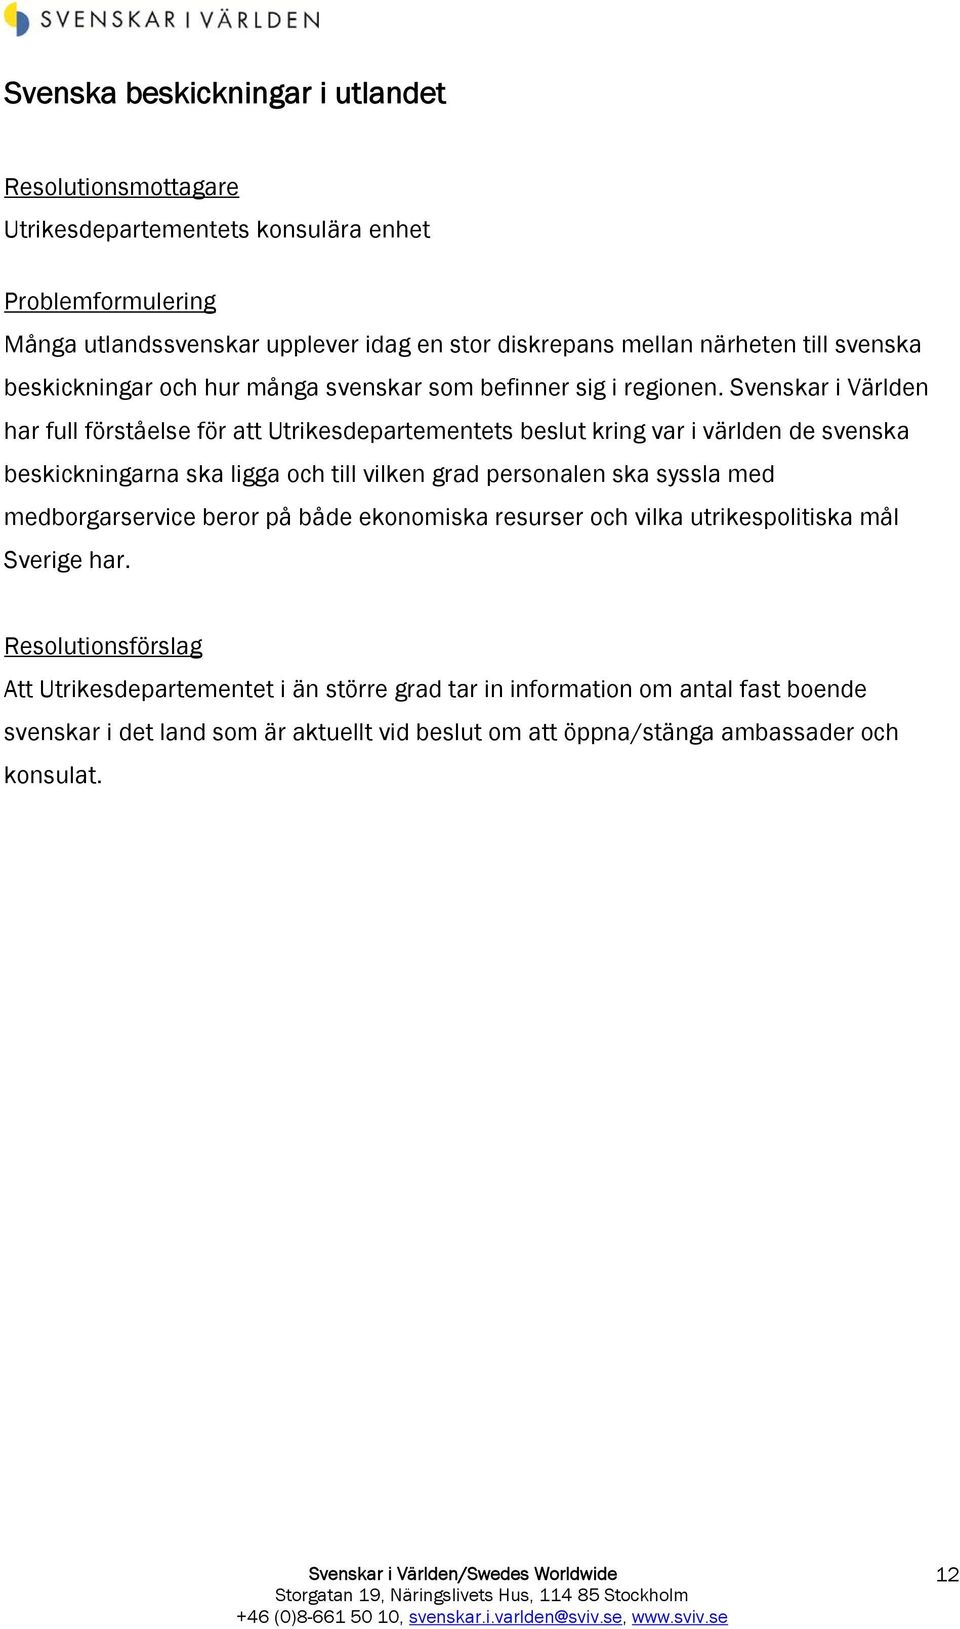 Svenskar i Världen har full förståelse för att Utrikesdepartementets beslut kring var i världen de svenska beskickningarna ska ligga och till vilken grad personalen